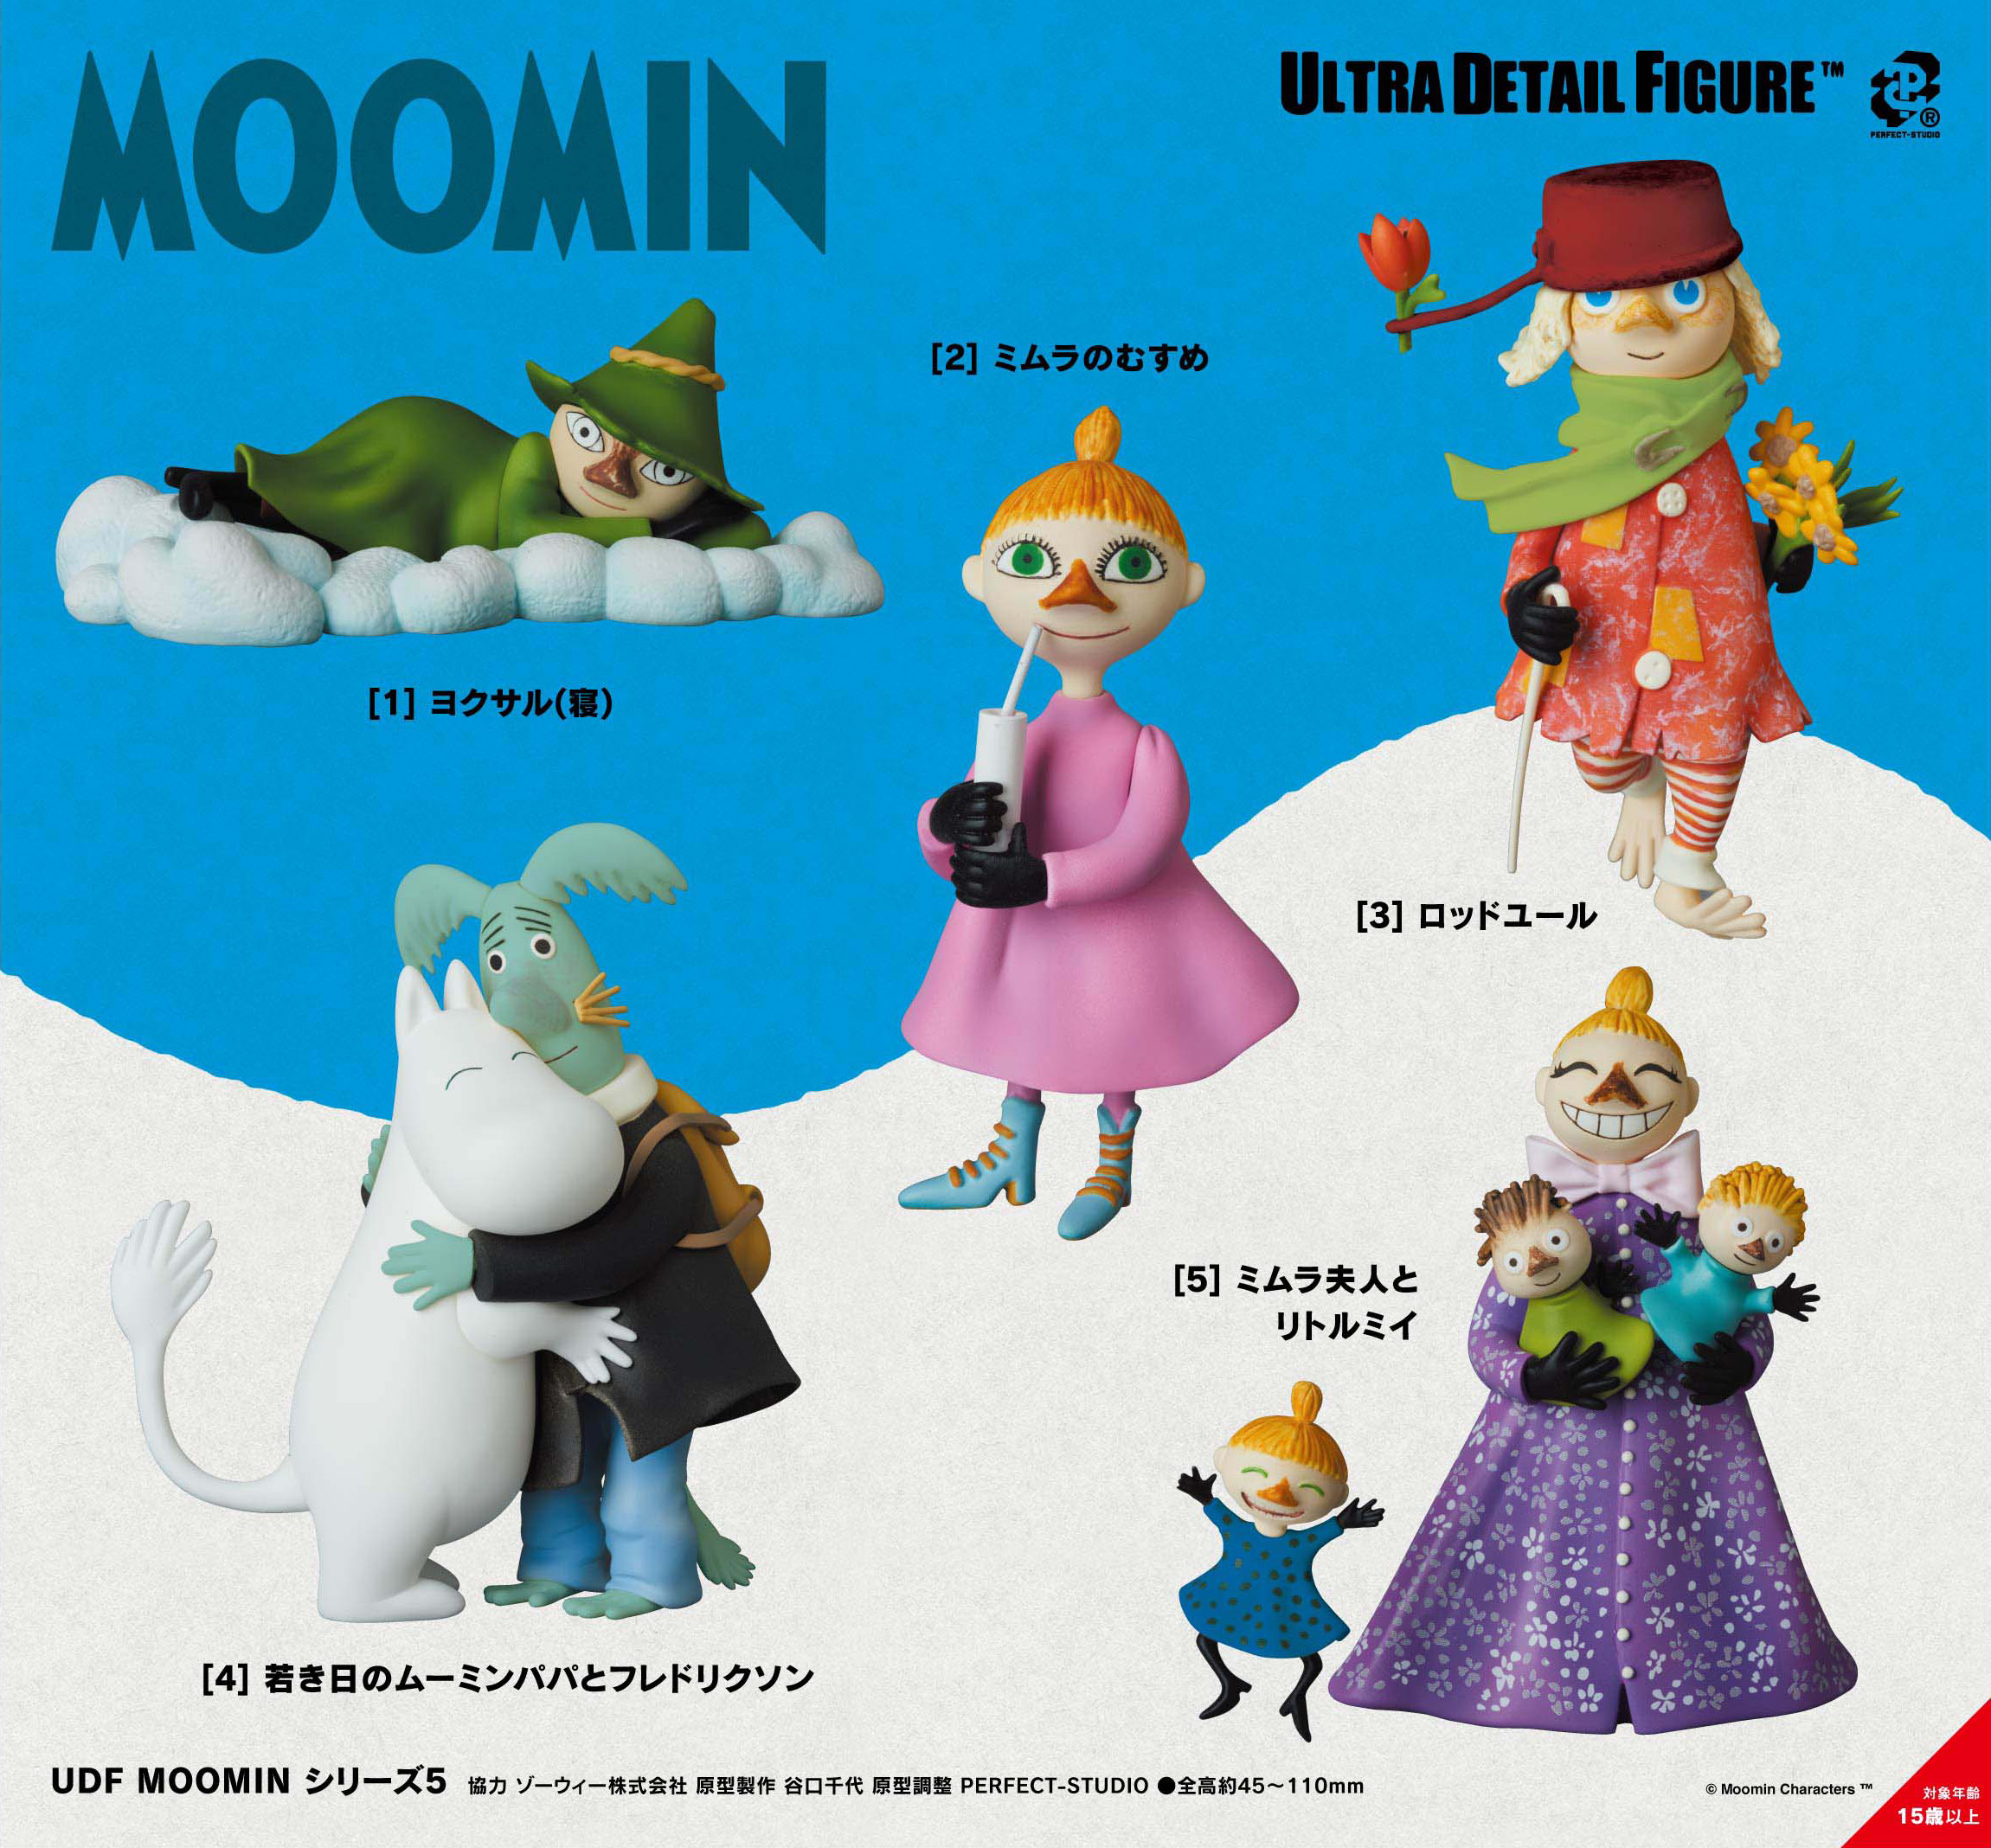 UDF MOOMINシリーズ5 5種(UDF MOOMIN Series 5) - MILESTONE Inc. | 系列及套装商品详细信息